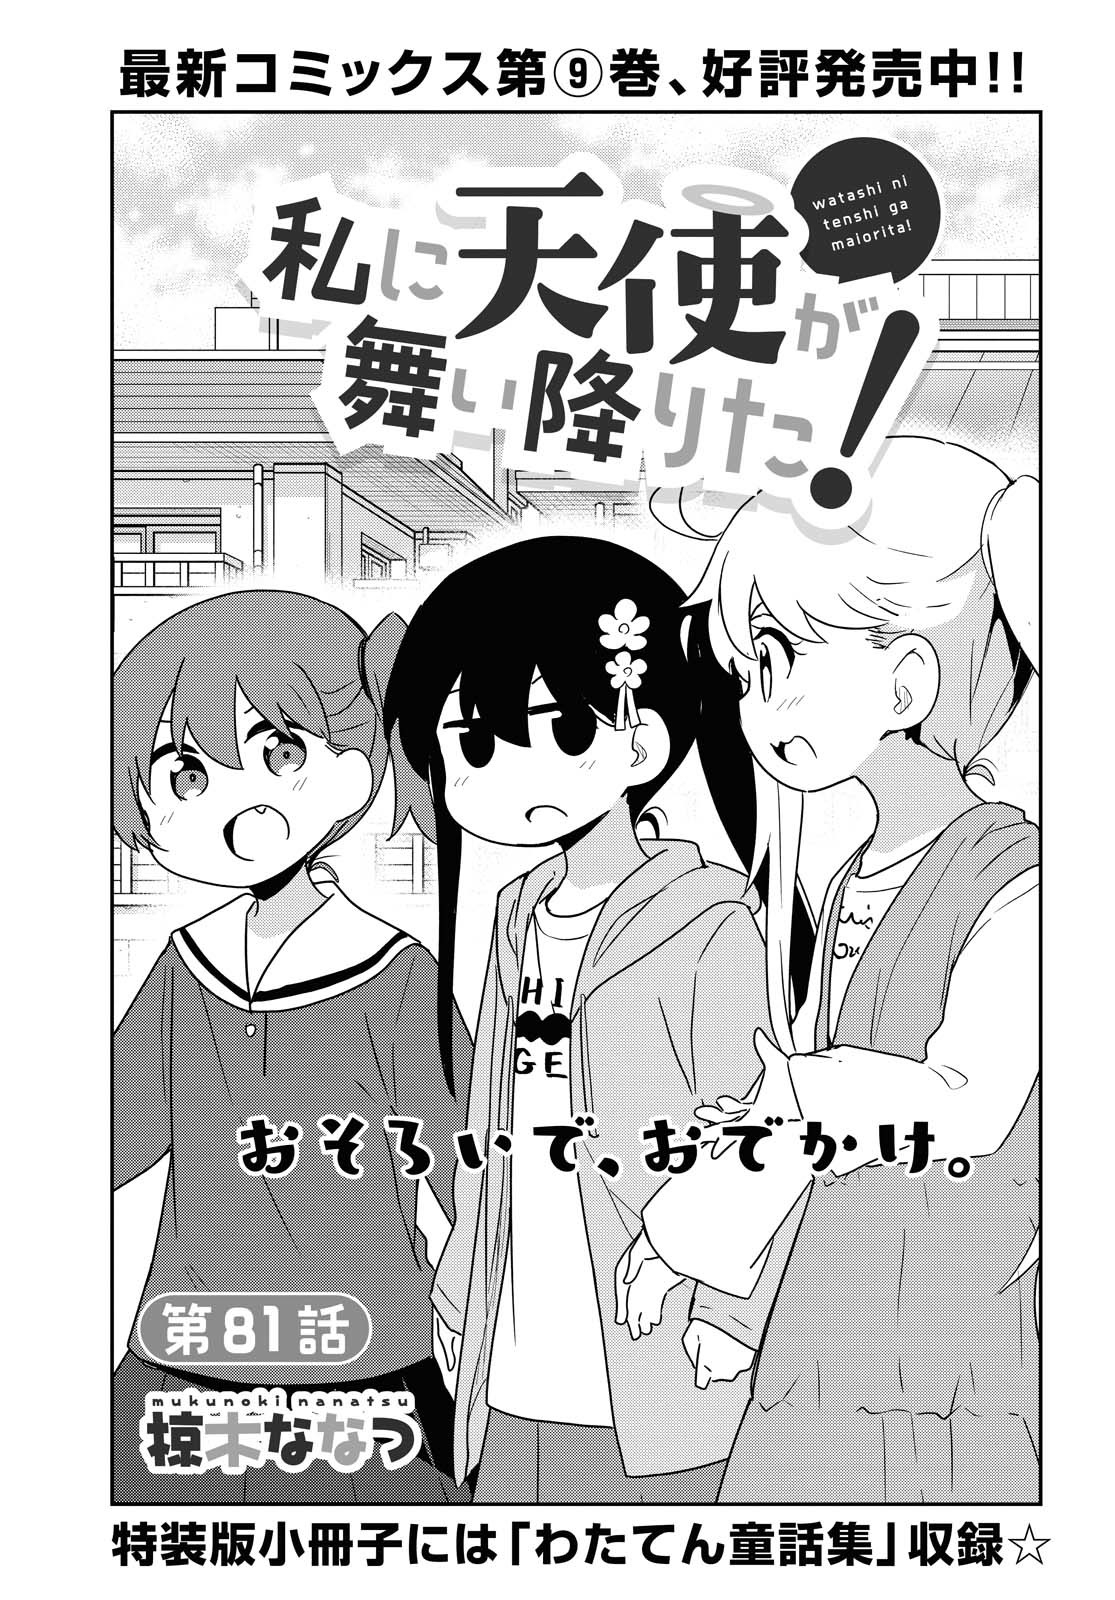 Watashi ni Tenshi ga Maiorita! - Chapter 81 - Page 1